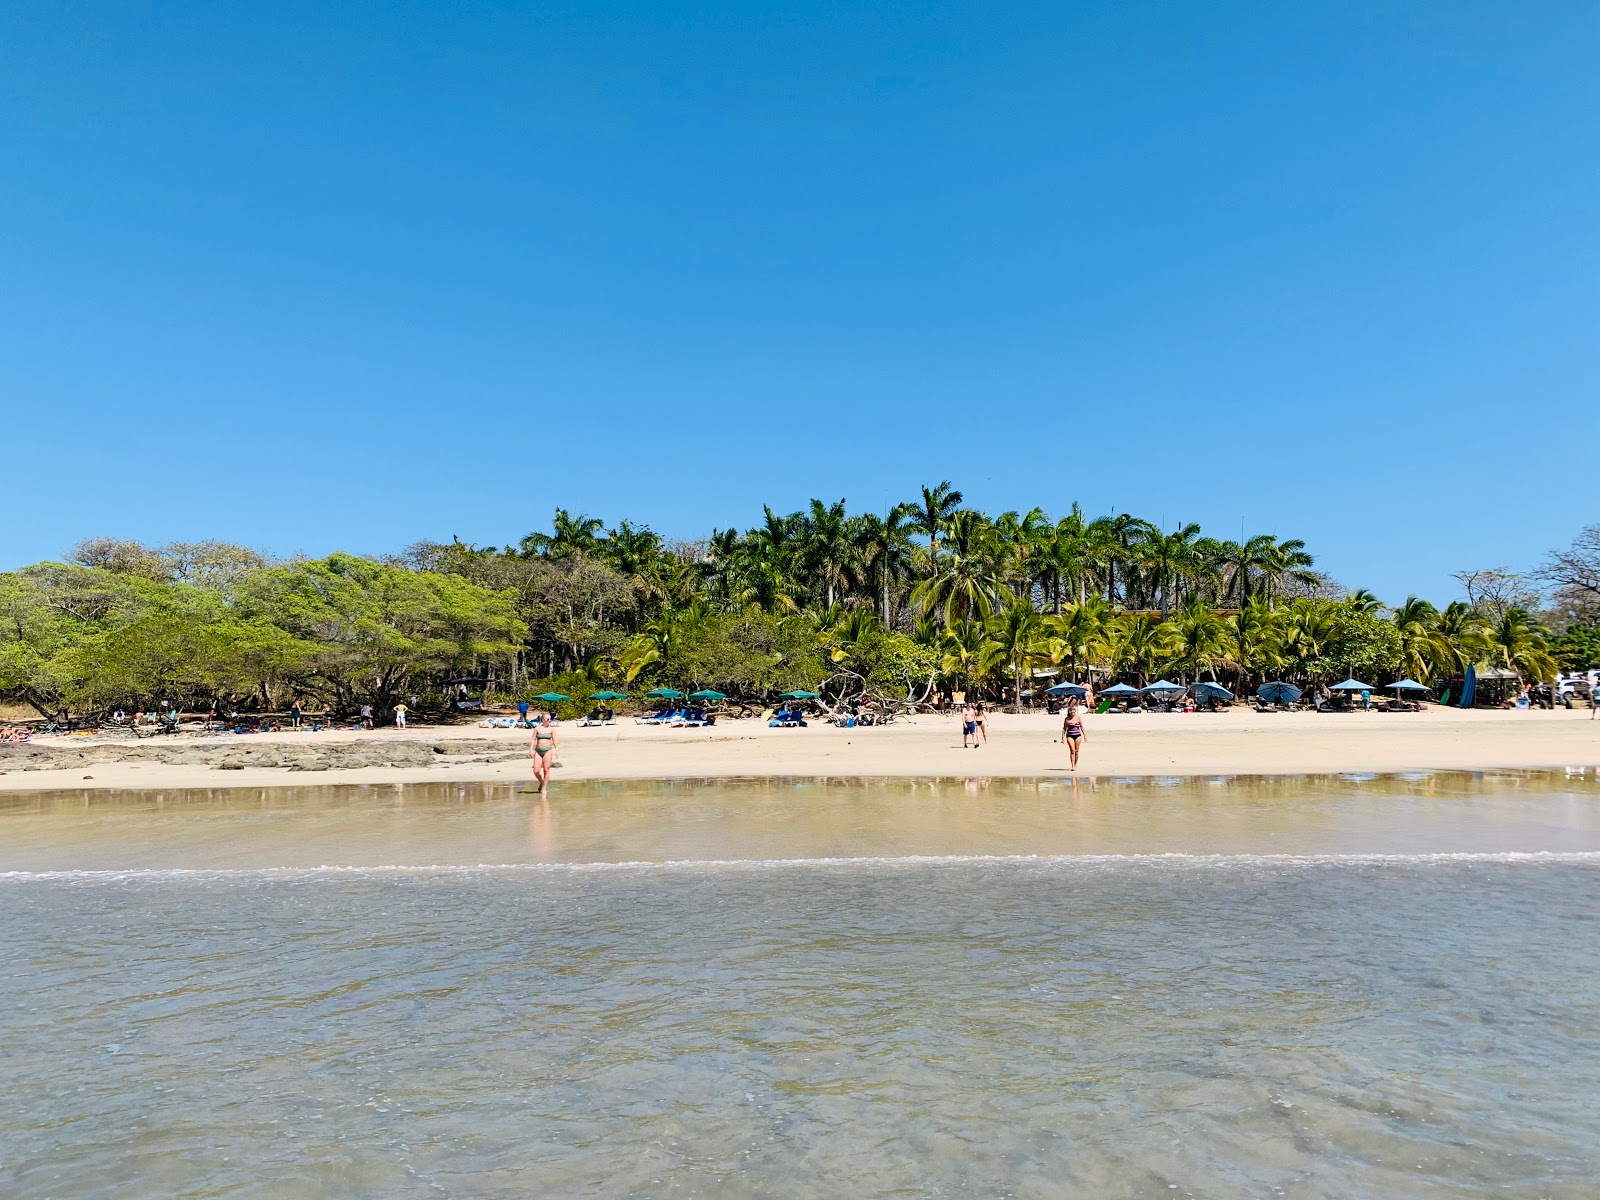 Playa Avellana'in fotoğrafı - rahatlamayı sevenler arasında popüler bir yer